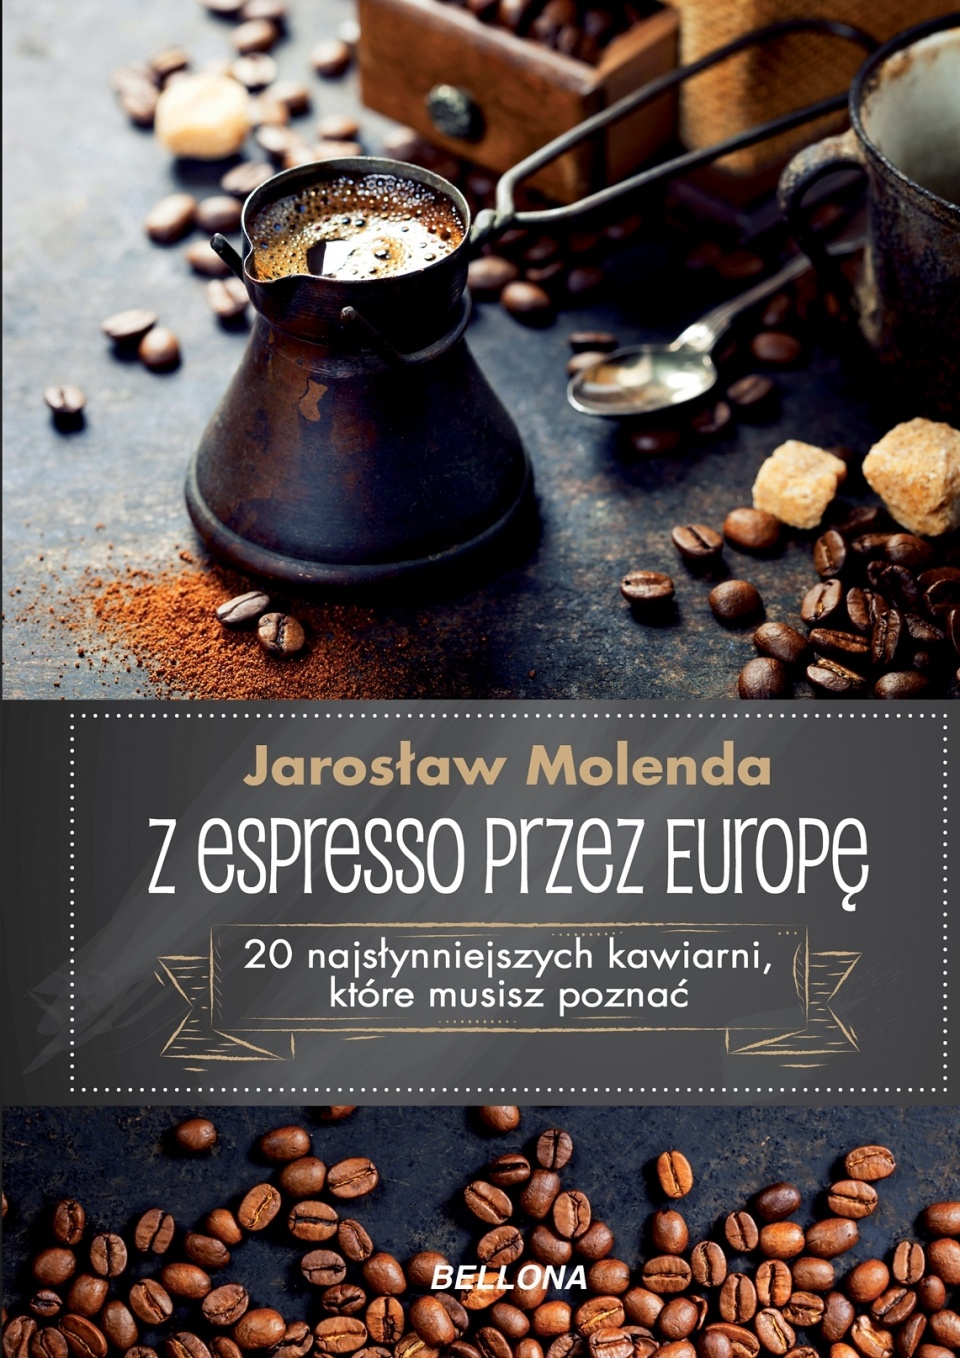 Okładka książki "Z espresso przez Europę". Fot. materiały prasowe